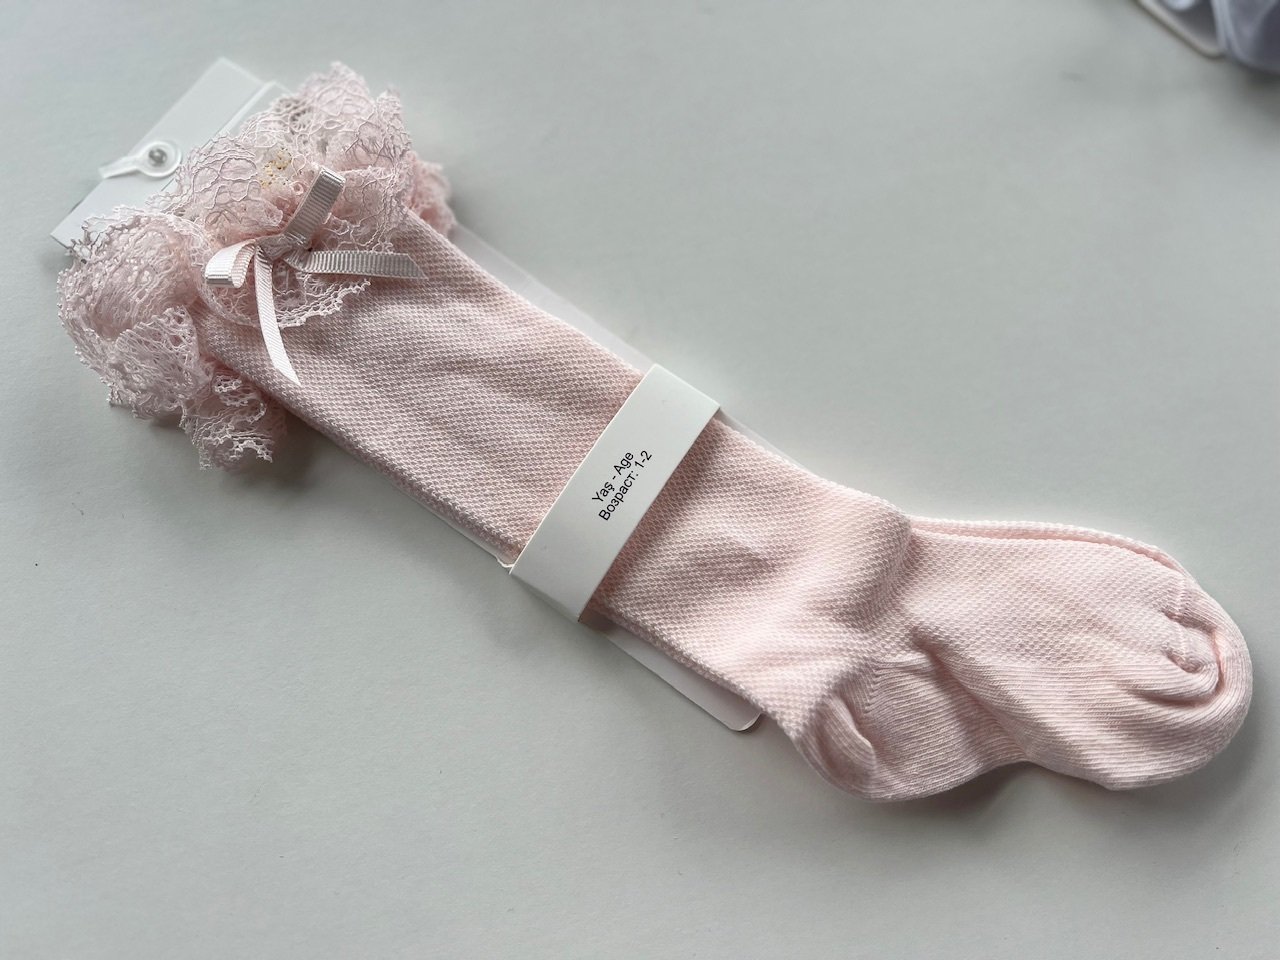 Ilgos rožinės kojinės su tiuliu